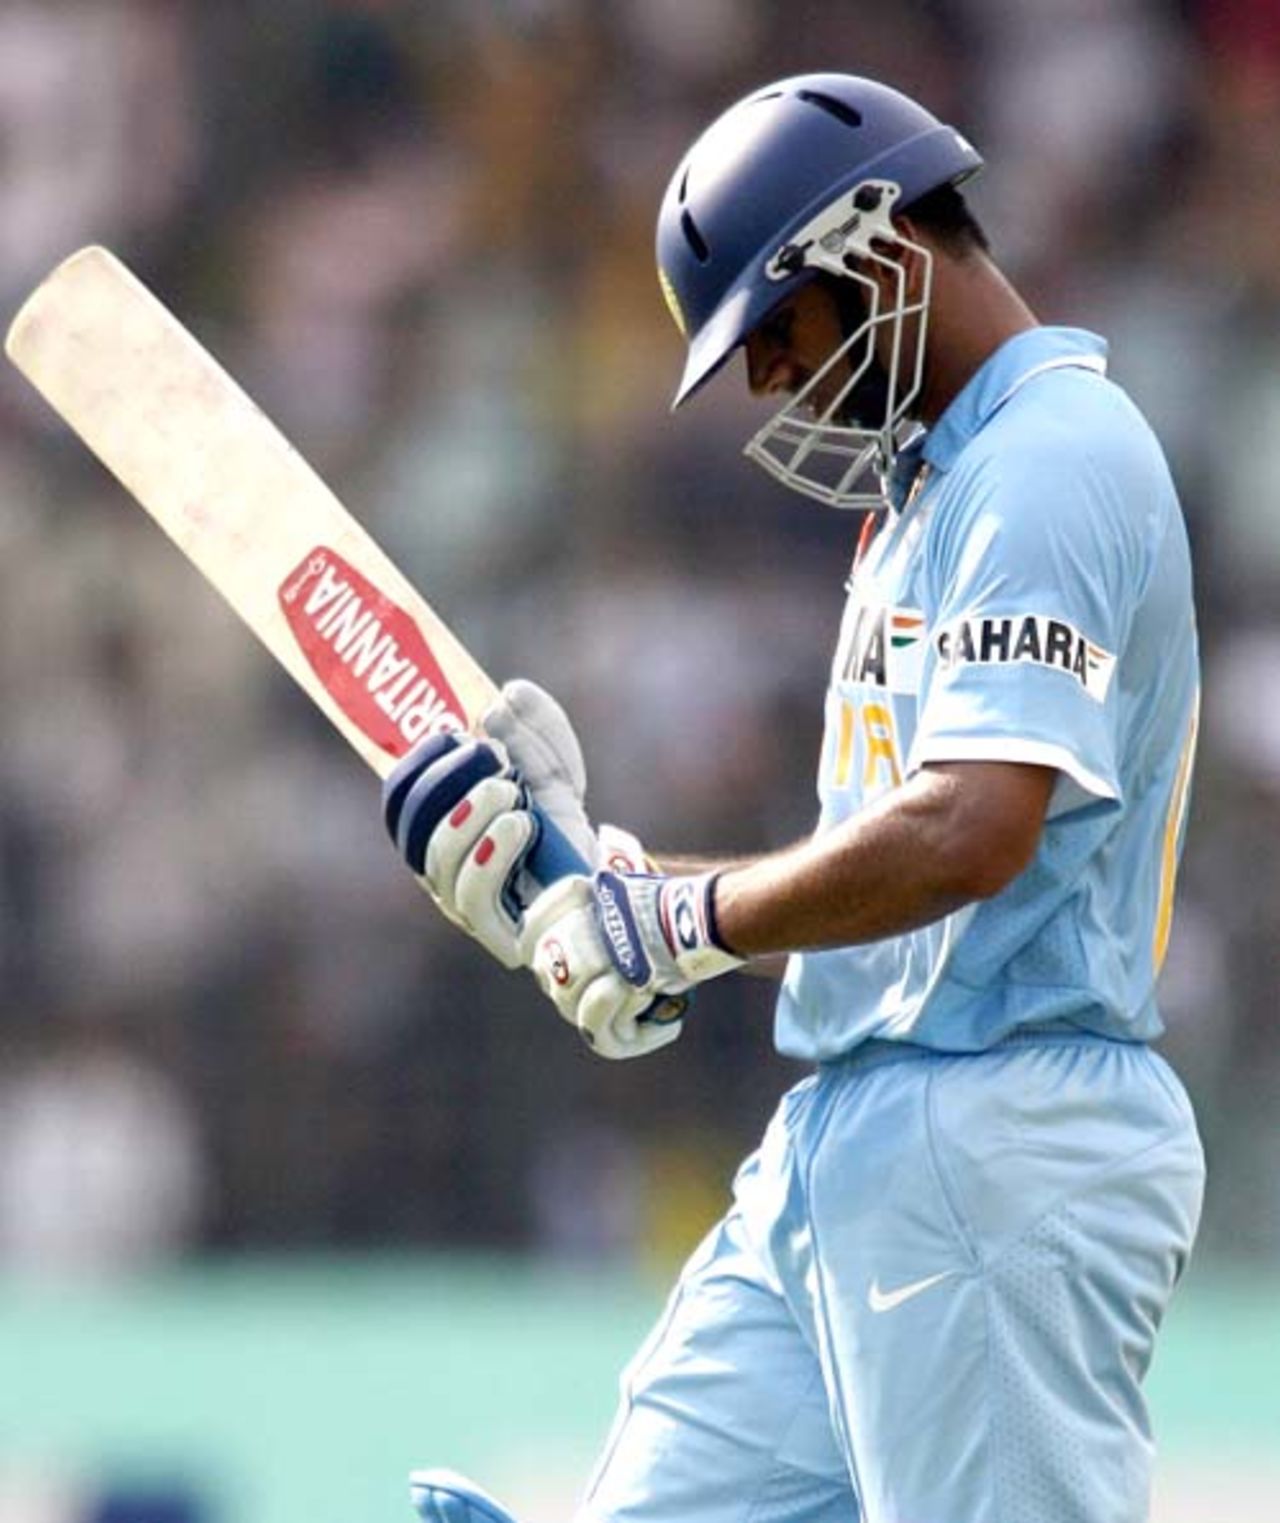 Rahul Dravid was caught off Saqibul Hassan for 22, Bangladesh v India, 1st ODI, Mirpur, May 10, 2007